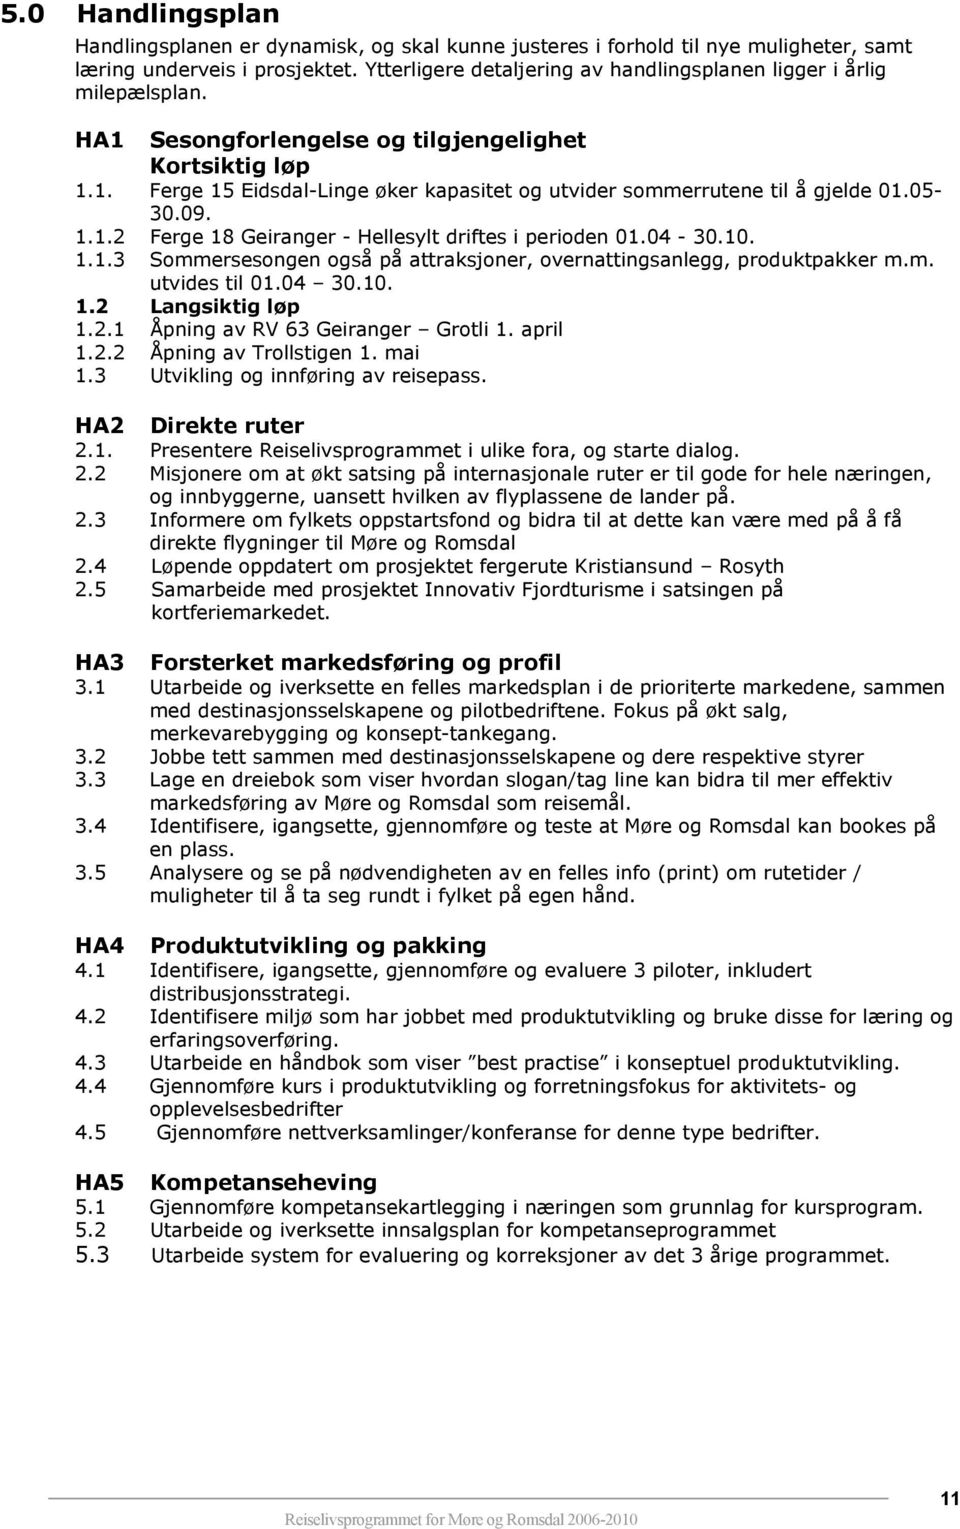 05-30.09. 1.1.2 Ferge 18 Geiranger - Hellesylt driftes i perioden 01.04-30.10. 1.1.3 Sommersesongen også på attraksjoner, overnattingsanlegg, produktpakker m.m. utvides til 01.04 30.10. 1.2 Langsiktig løp 1.